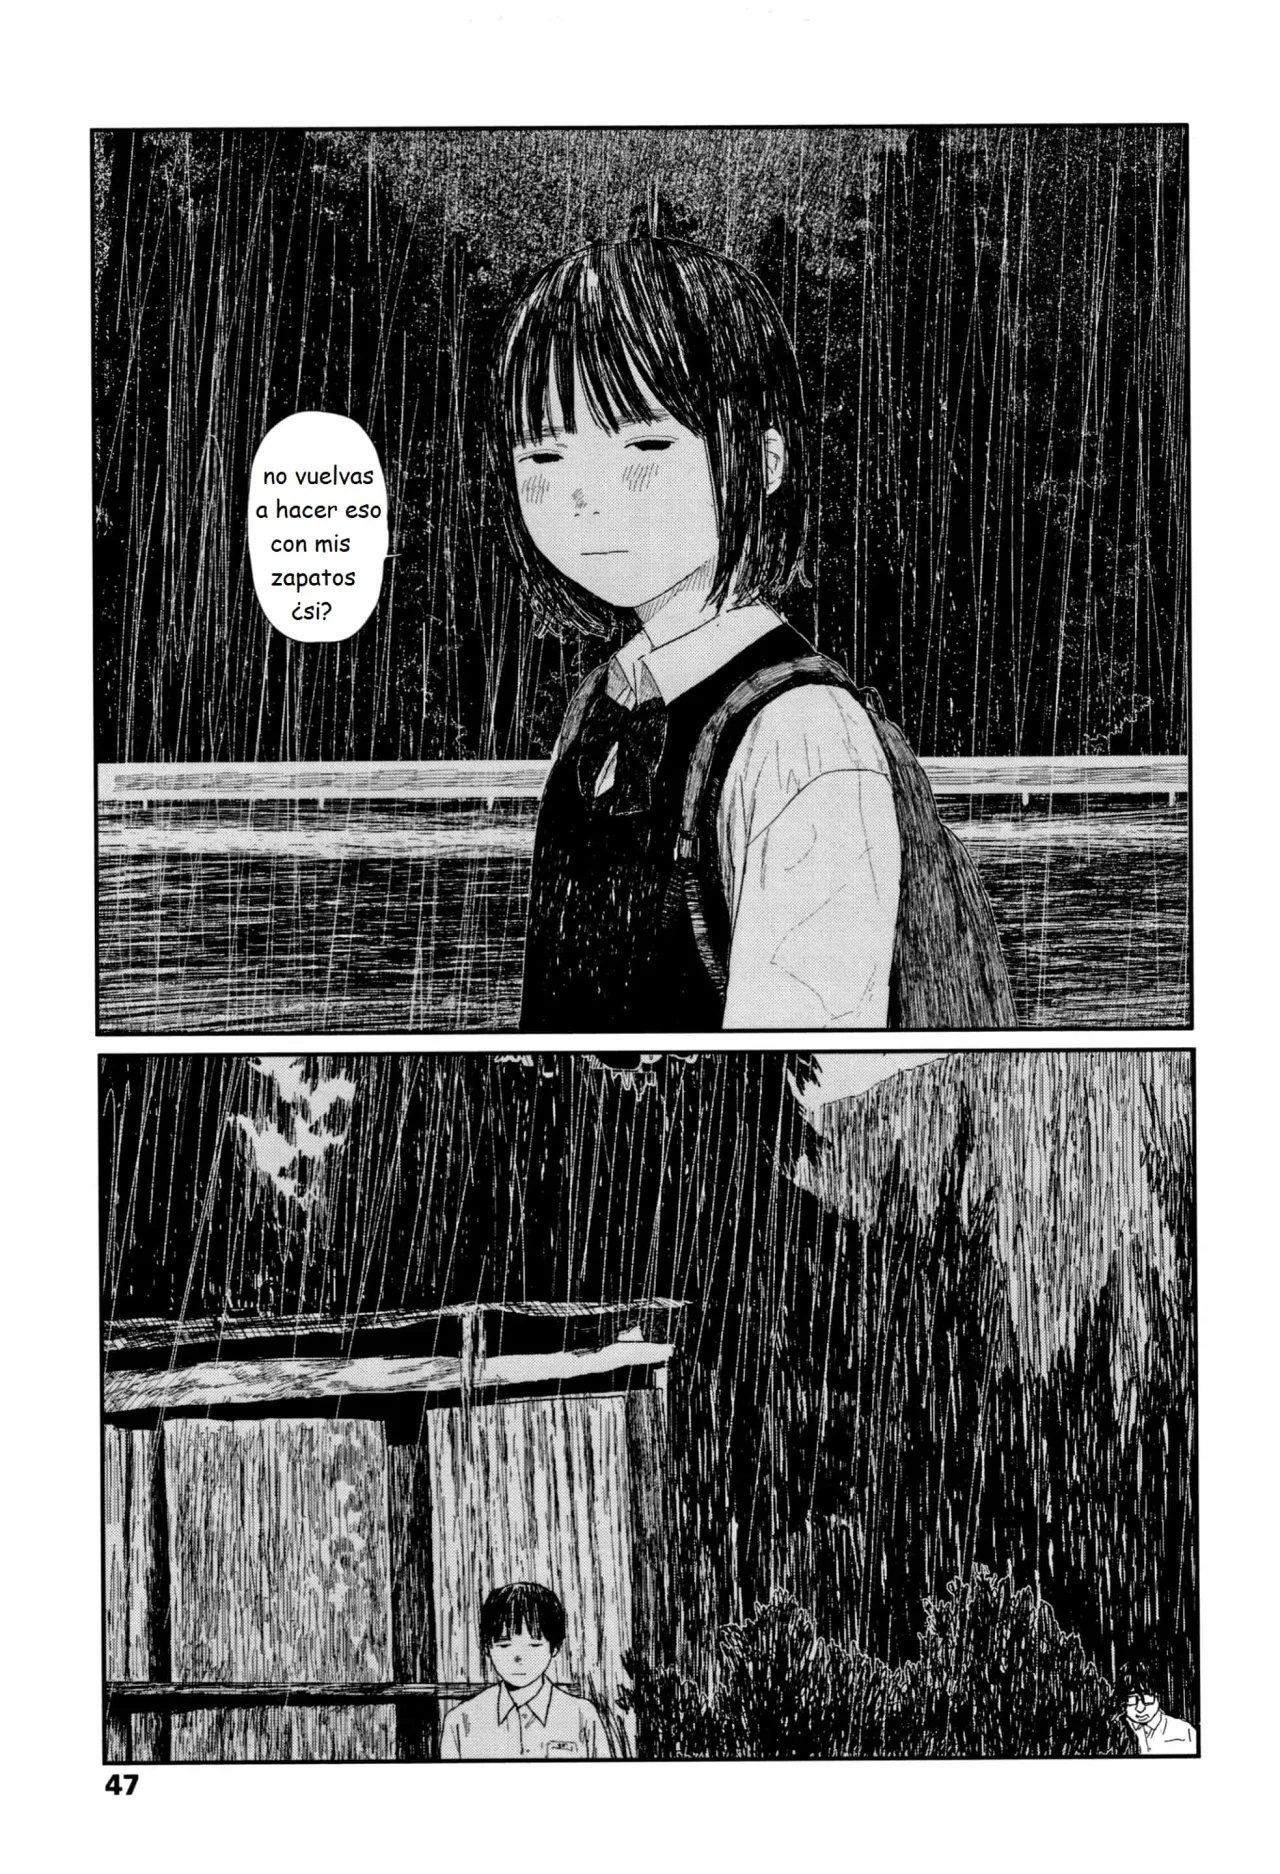 01 - Ochinai Ame Unfalling Rain - 49